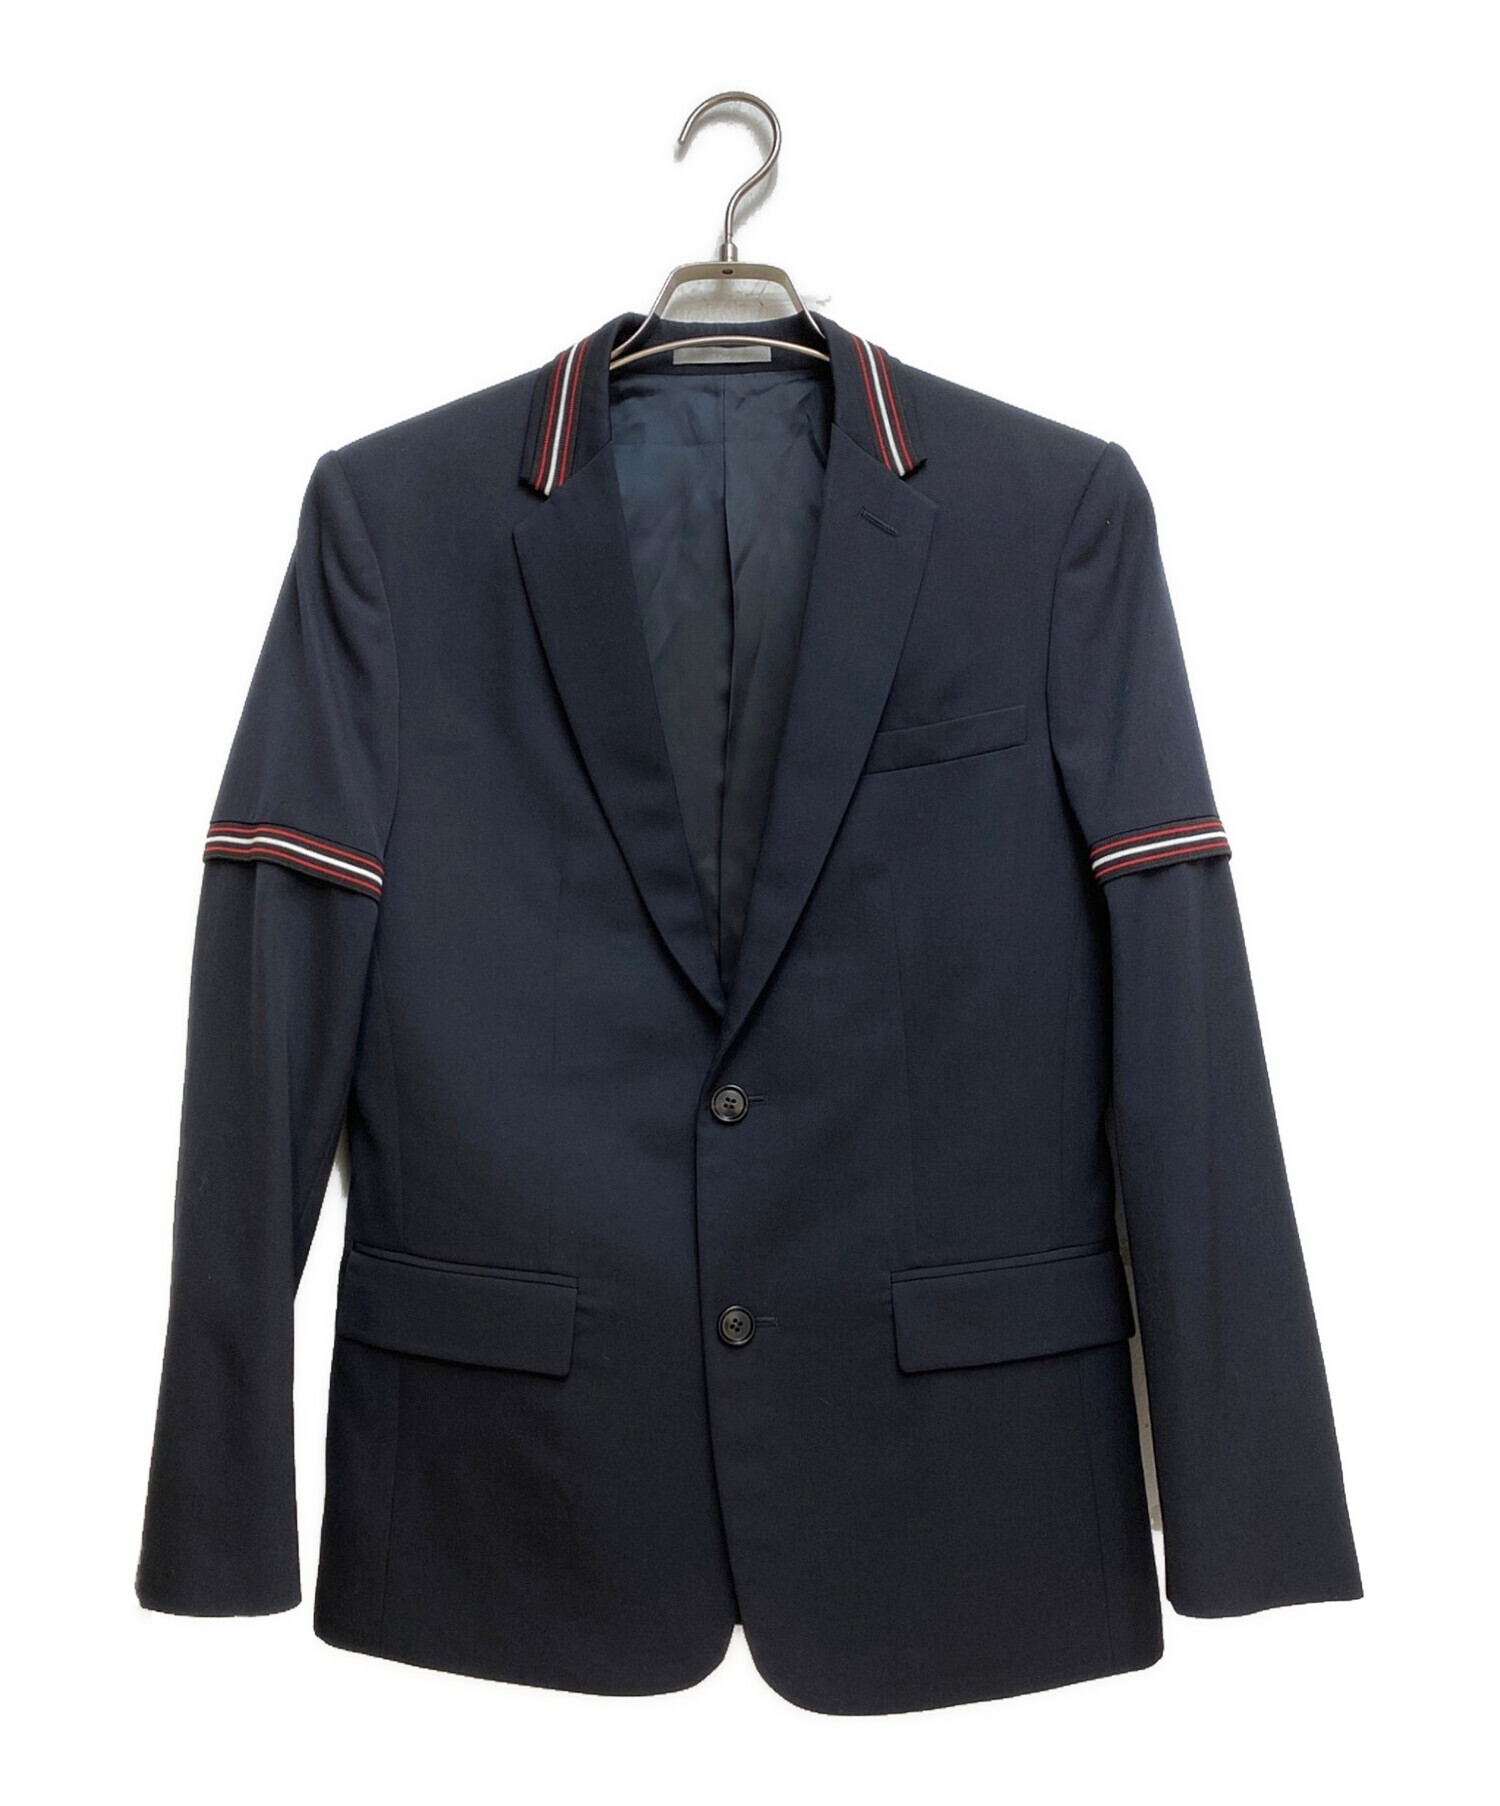 Dior Homme Stripe Tailored Jacket袖丈…62